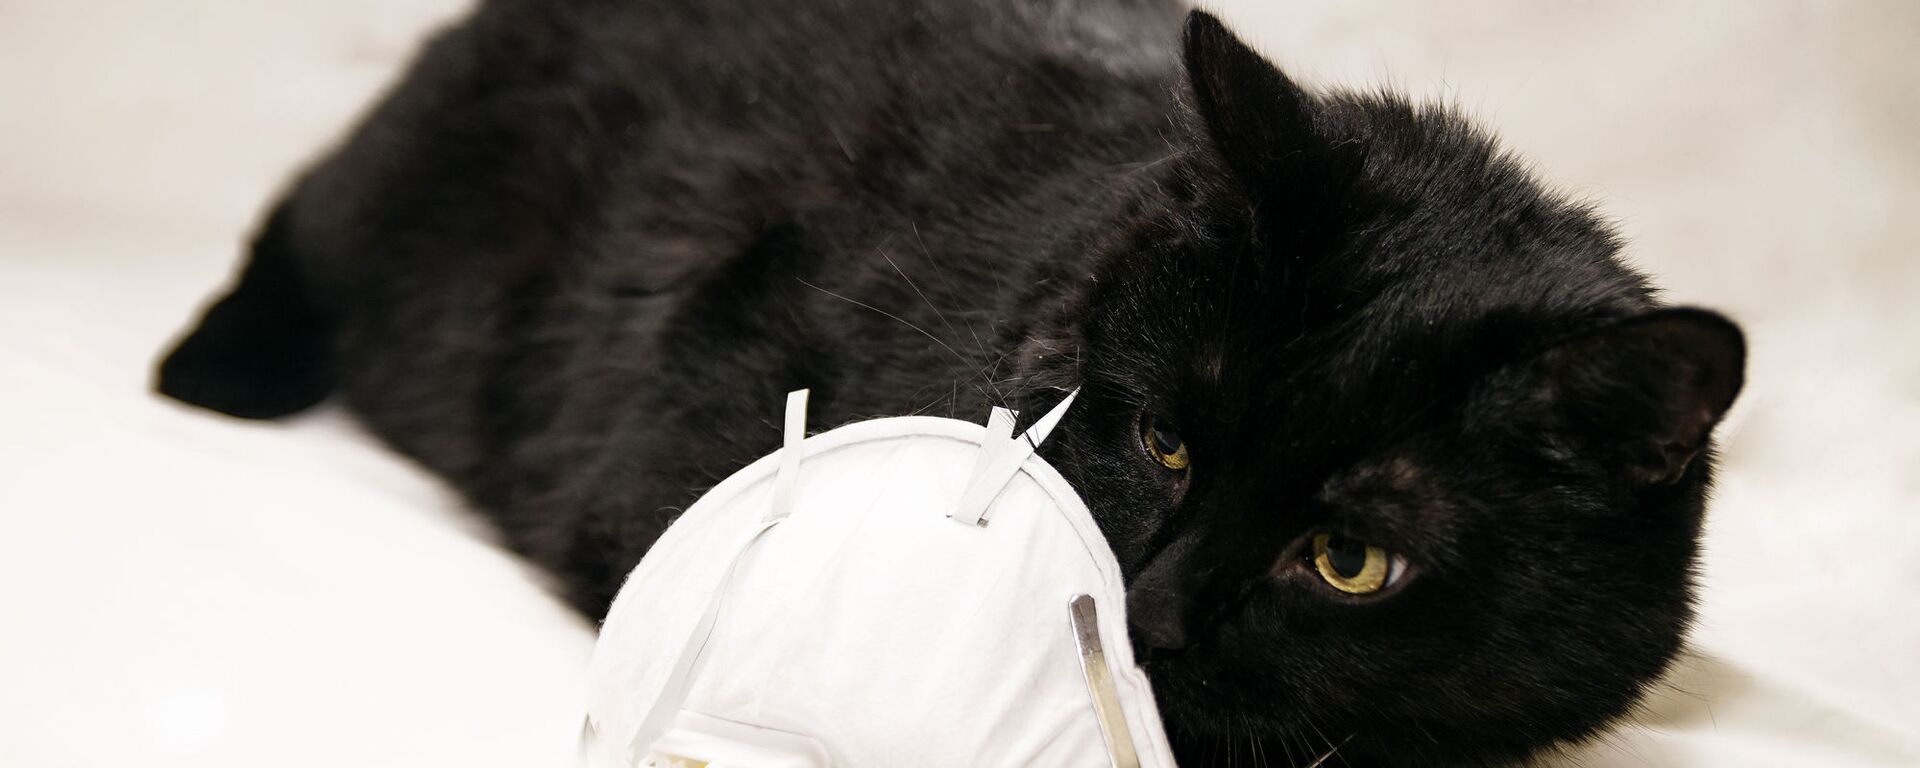 Черная кошка с респиратором - Sputnik Lietuva, 1920, 27.02.2021